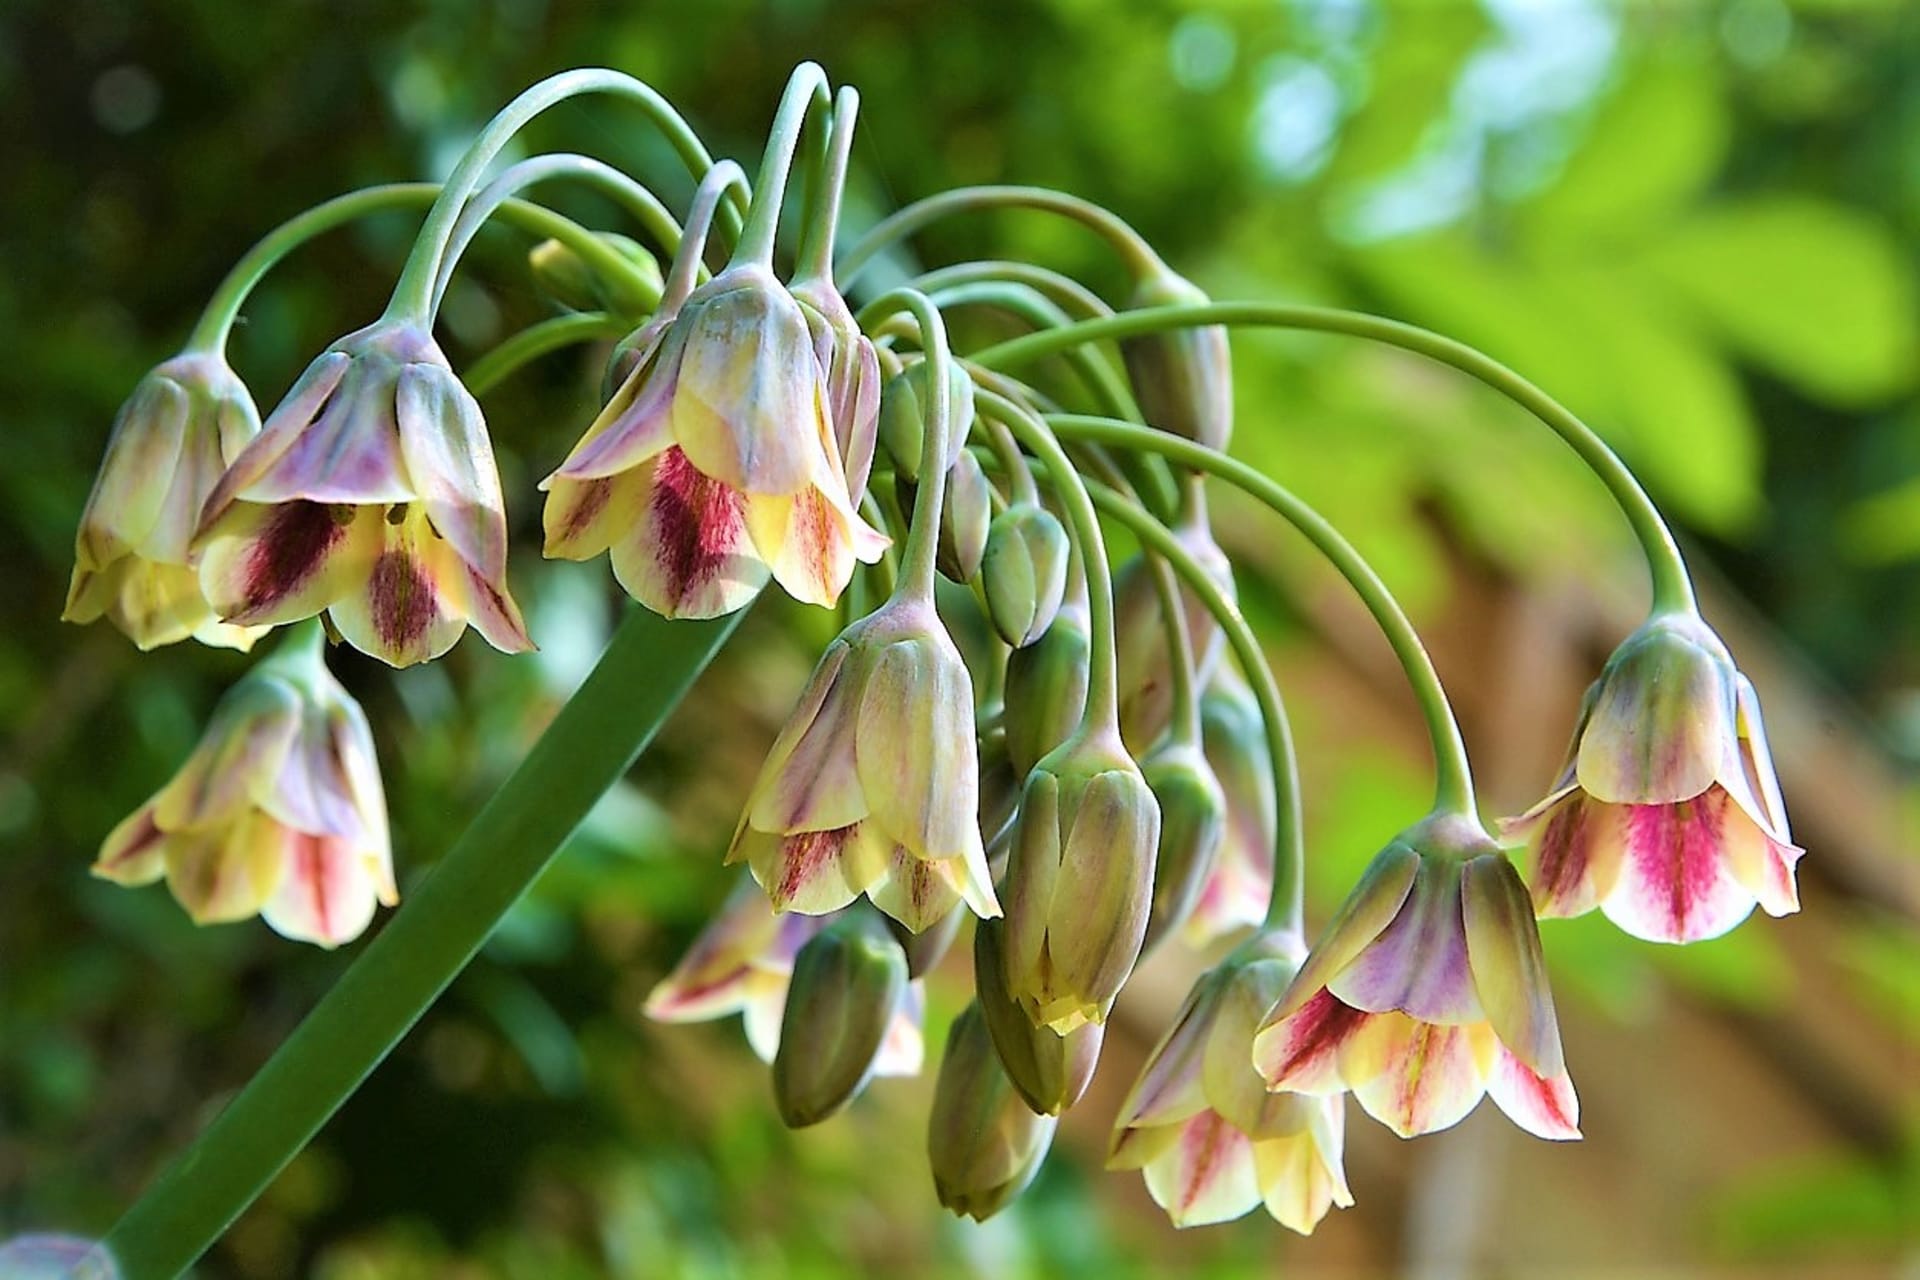 Atraktivní česnek sicilský (Nectaroscordum siculumči Allium siculum), známý taky jako středomořské zvonky, medový česnek nebo bulharská cibule.